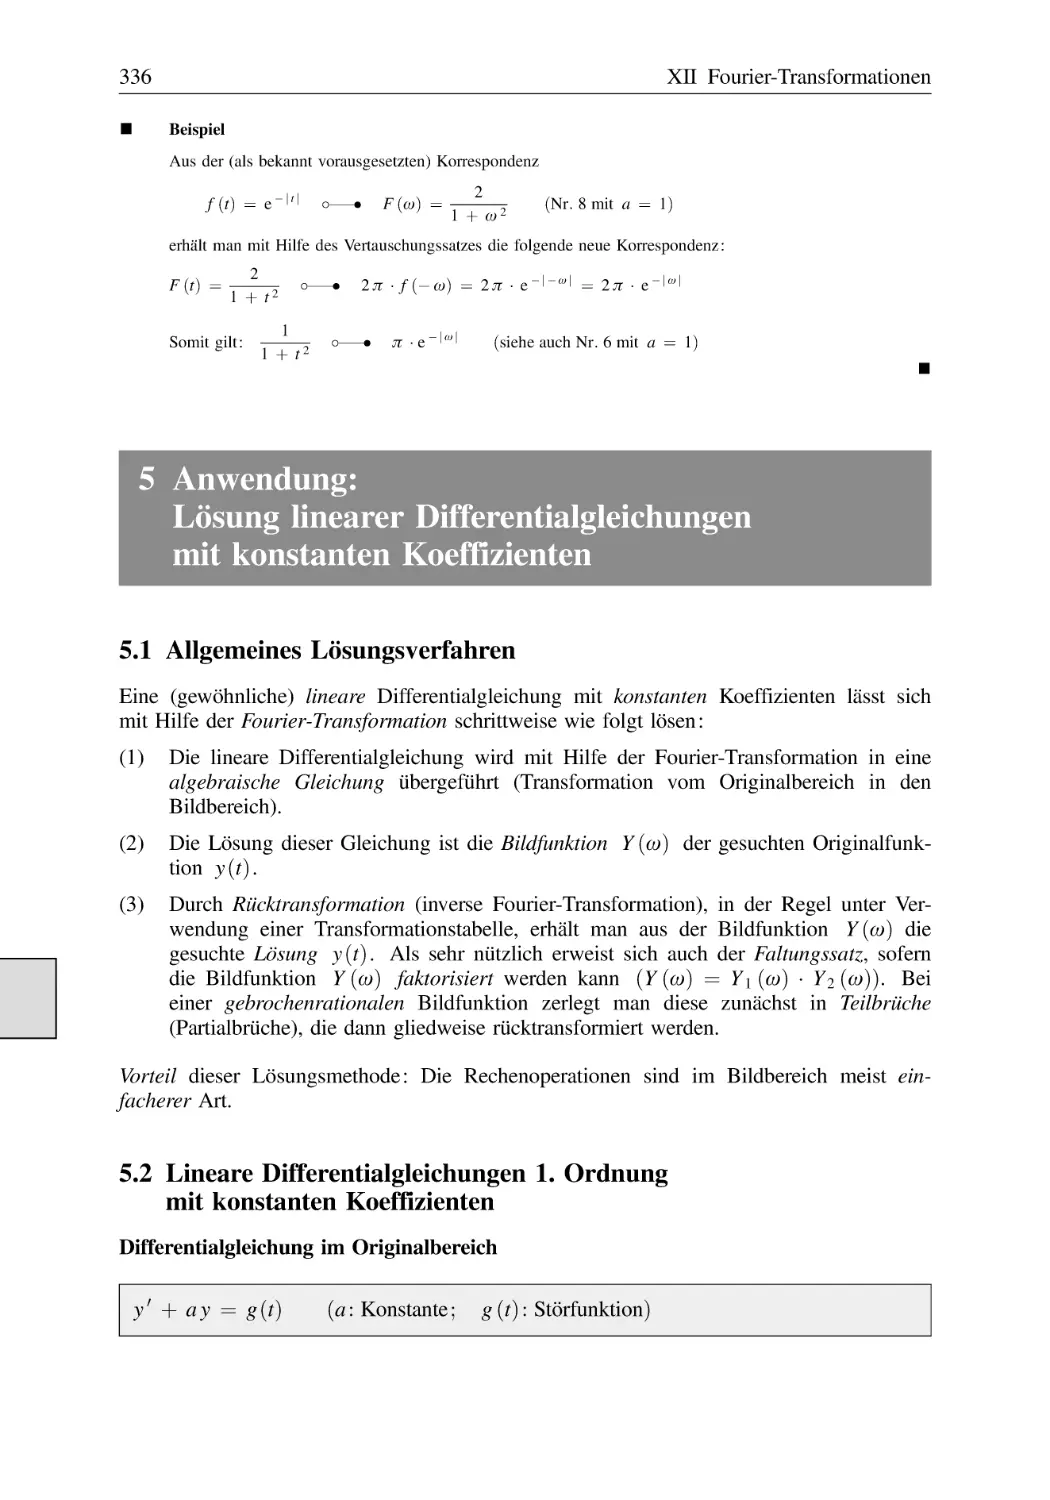 5 Anwendung
5.1 Allgemeines Lösungsverfahren
5.2 Lineare Differentialgleichungen 1. Ordnung mit konstanten Koeffizienten